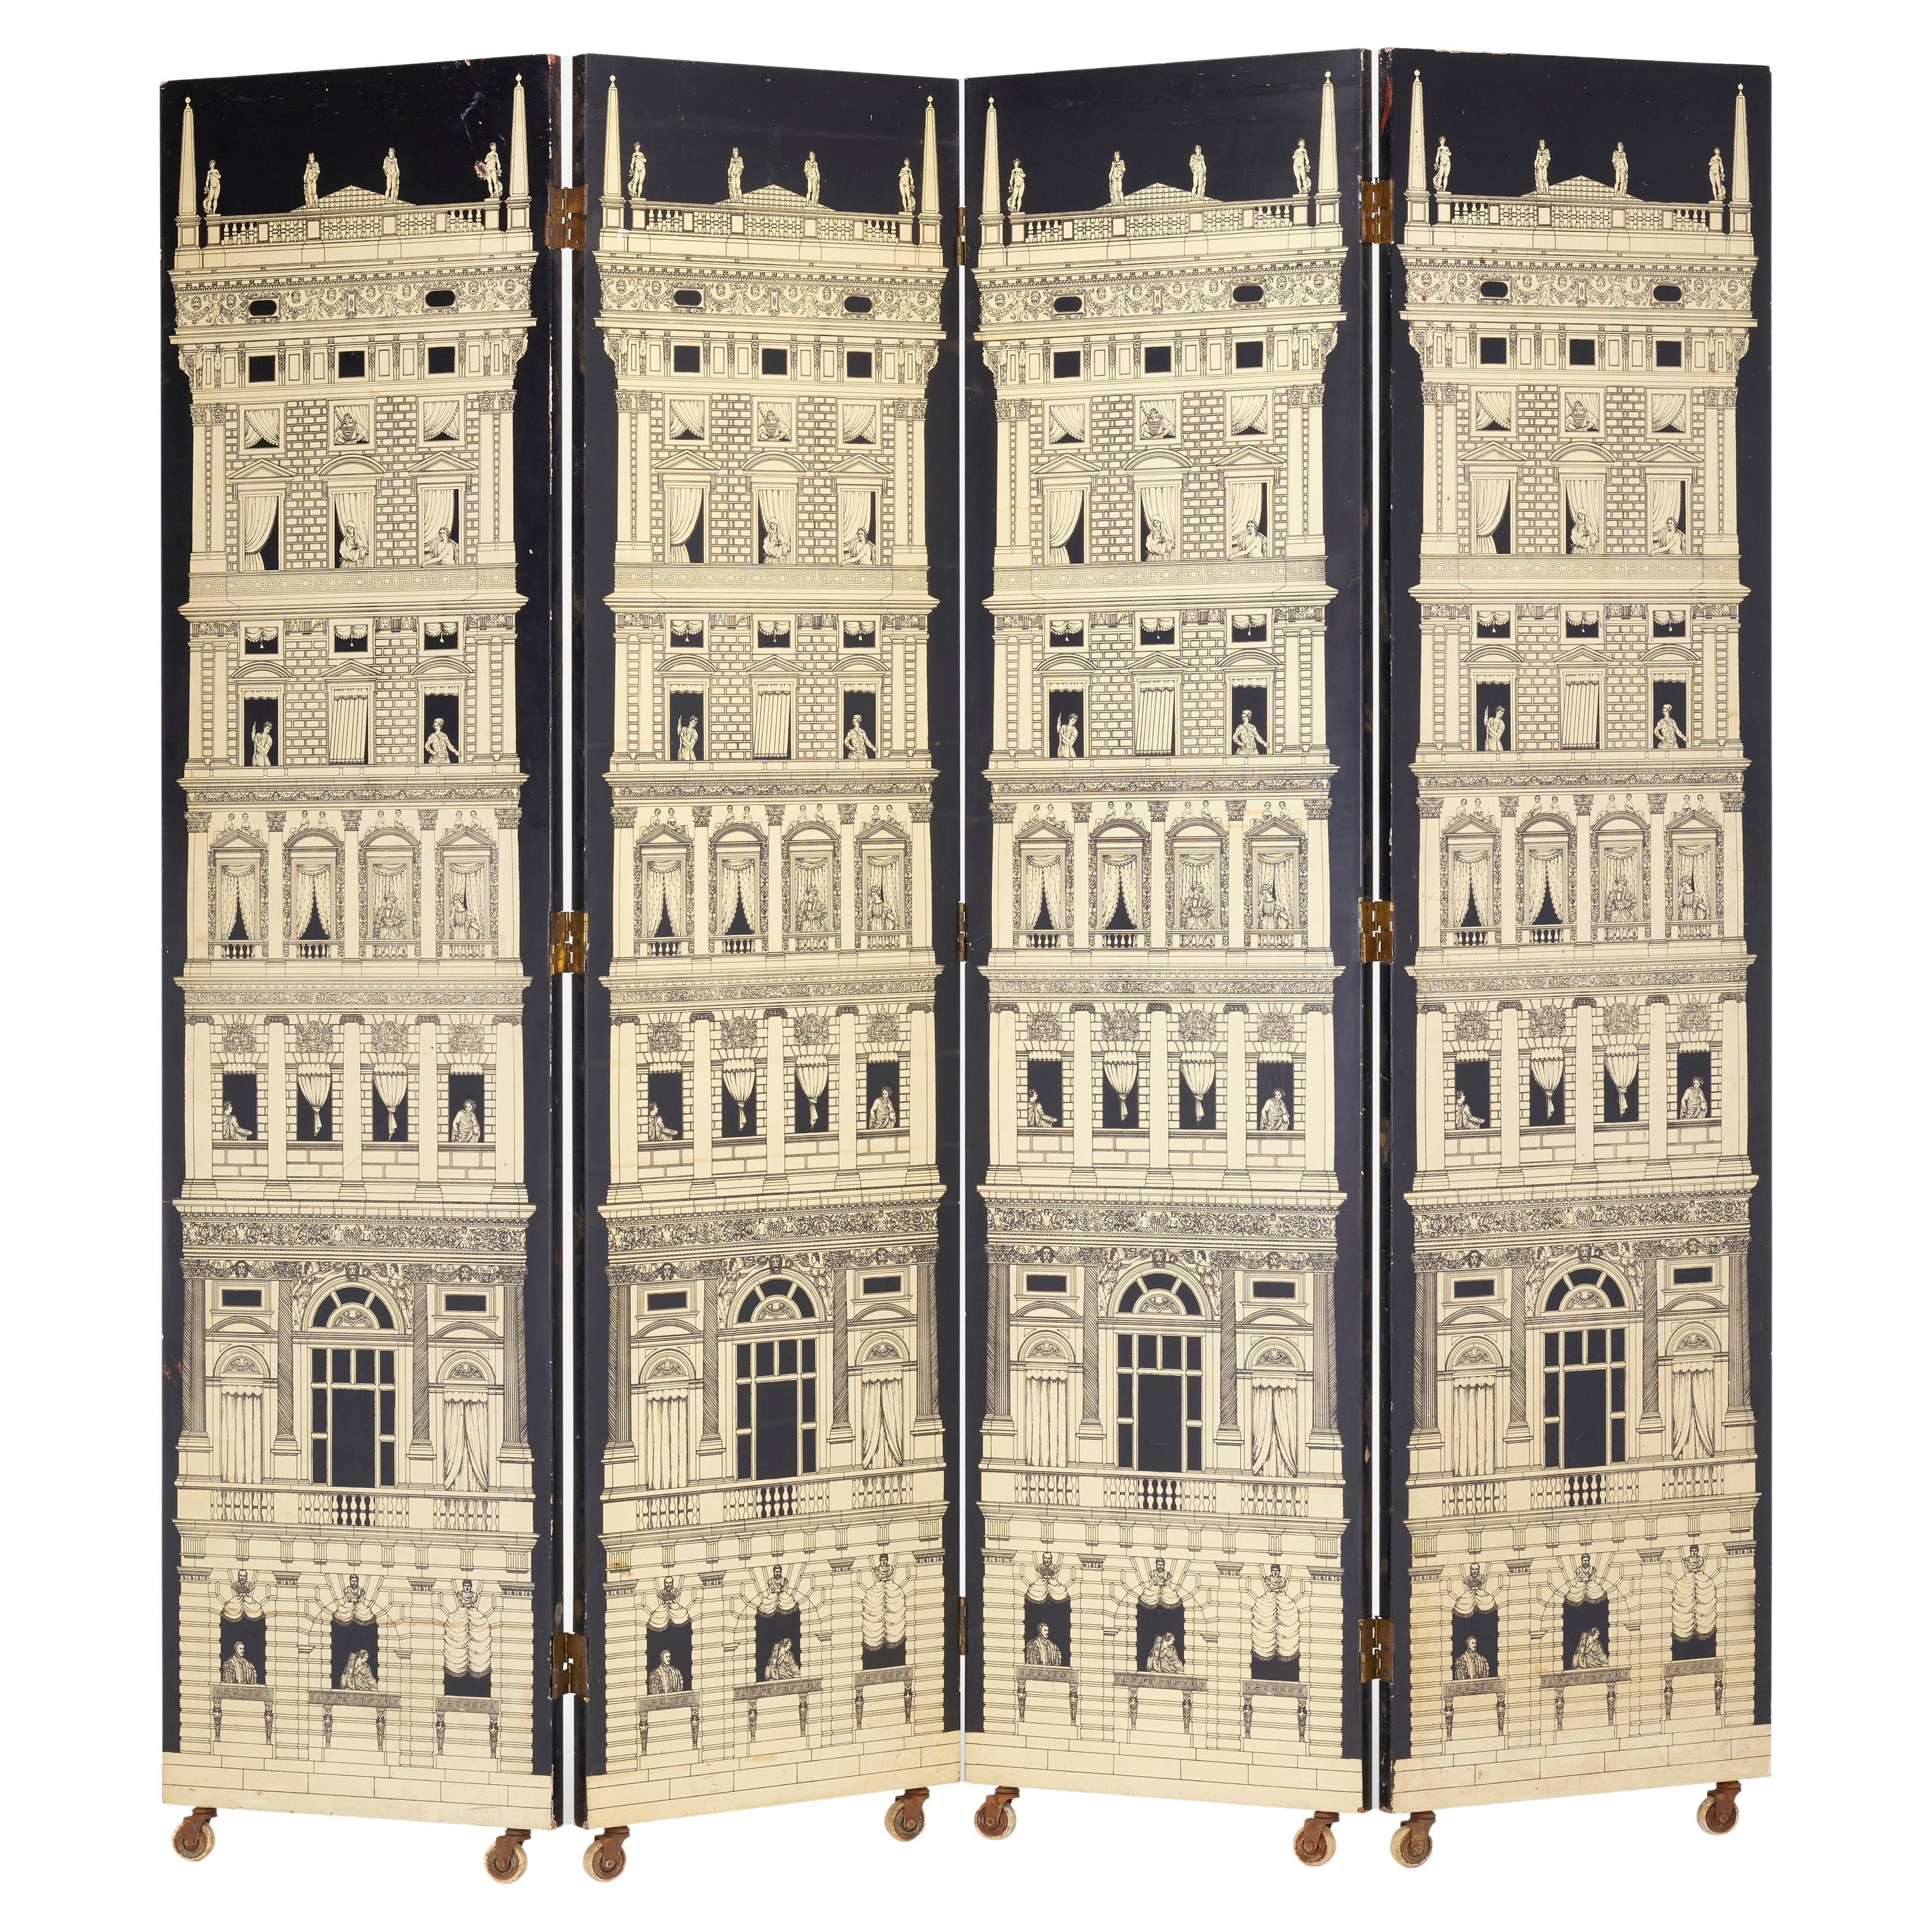 Rare Folding Screen "Grattacieli Rinascimentali" by Piero Fornasetti